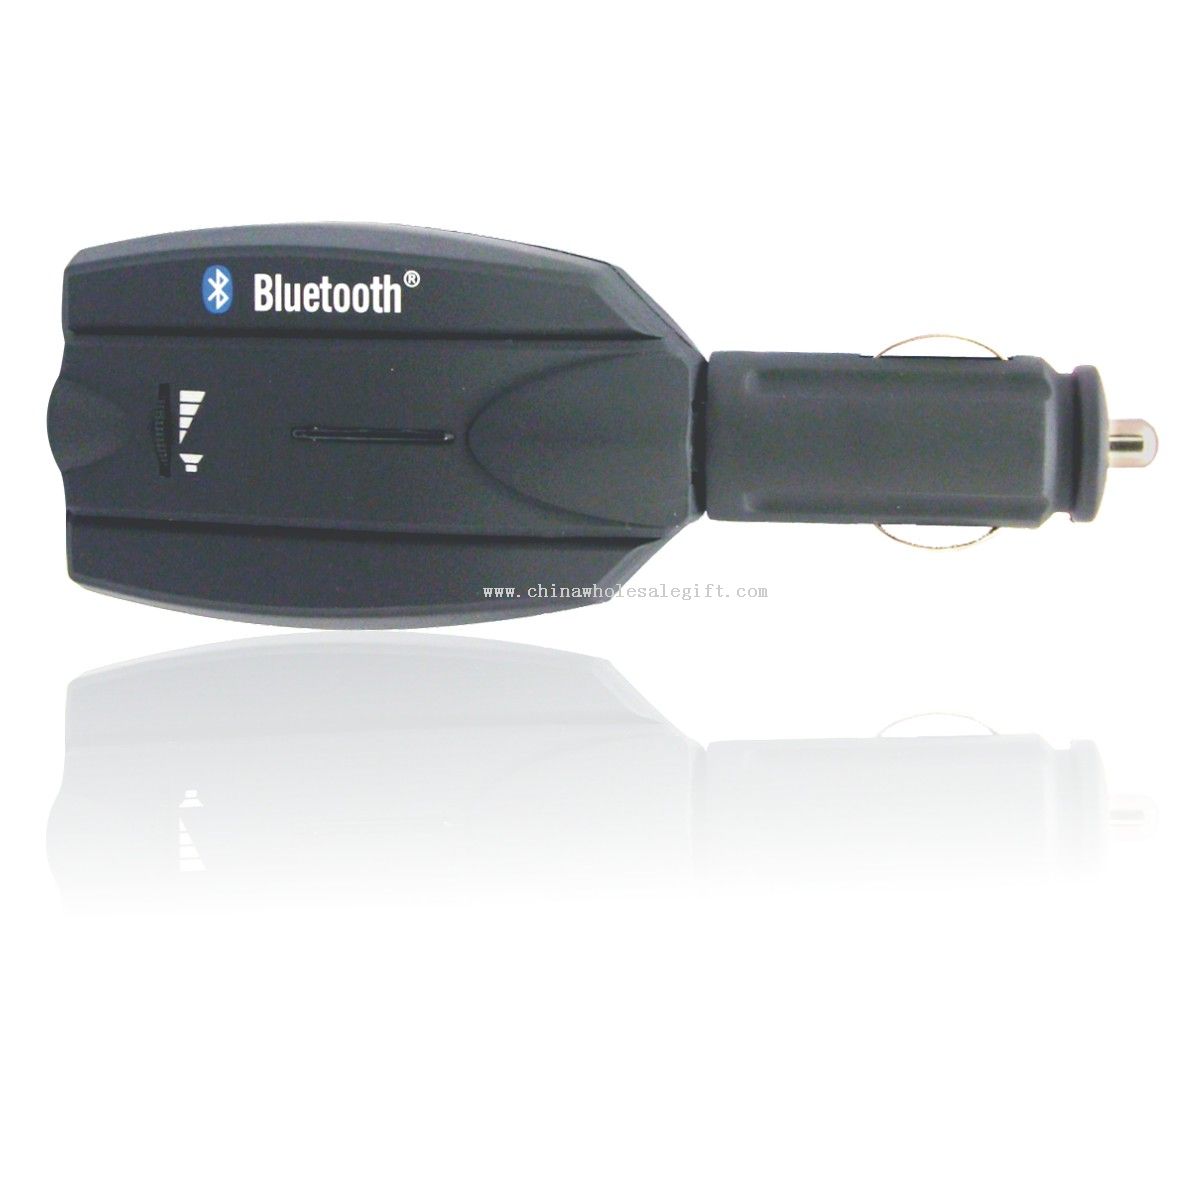 2.4 GHz wireless Bluetooth Mobil Kit